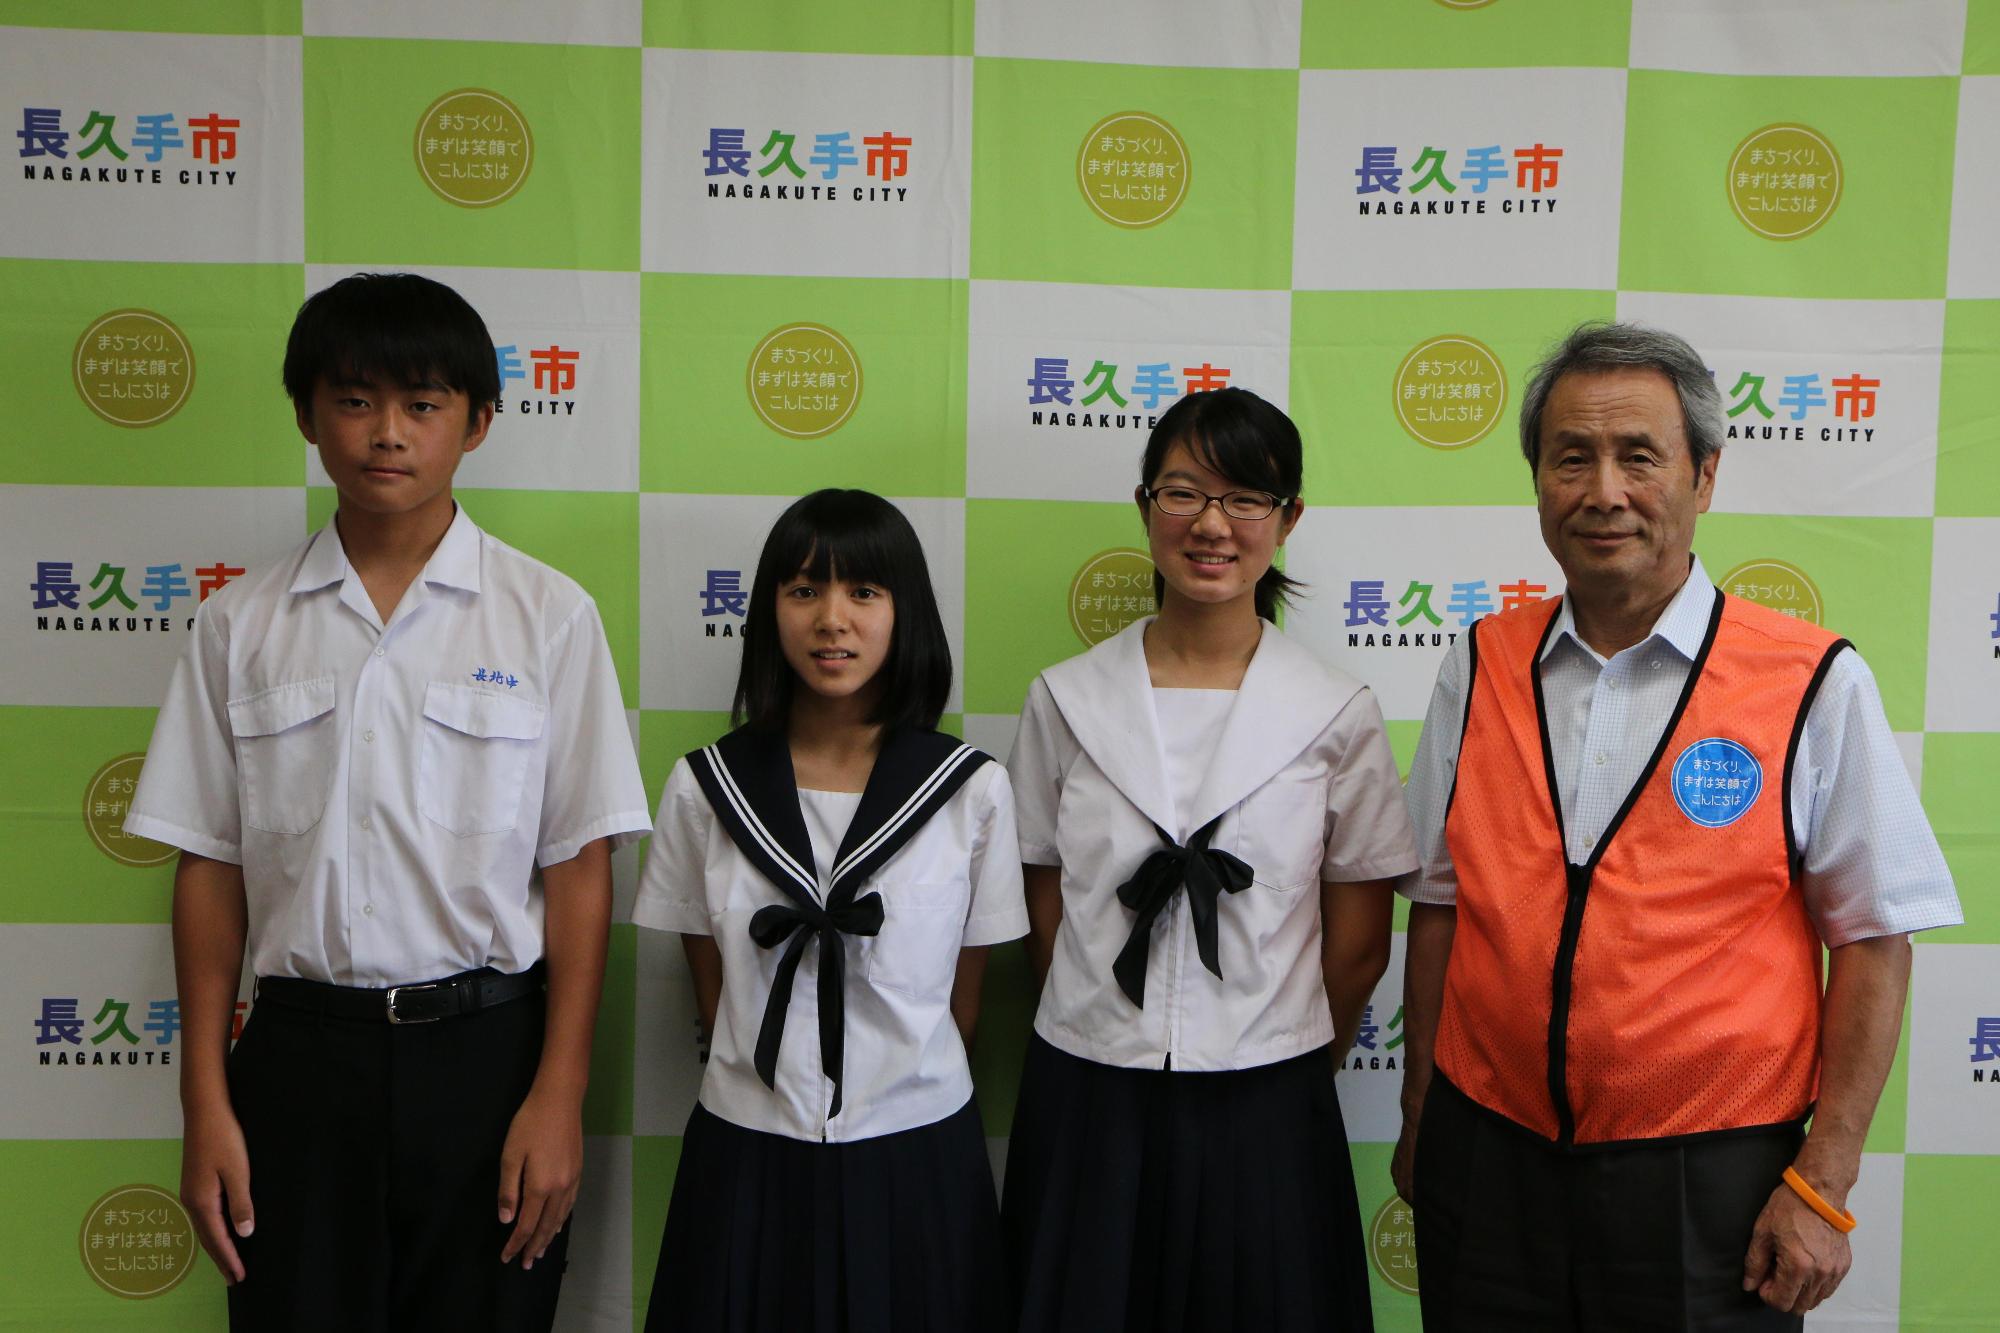 男子生徒1名と女子生徒2名が市長と並んで写っている写真